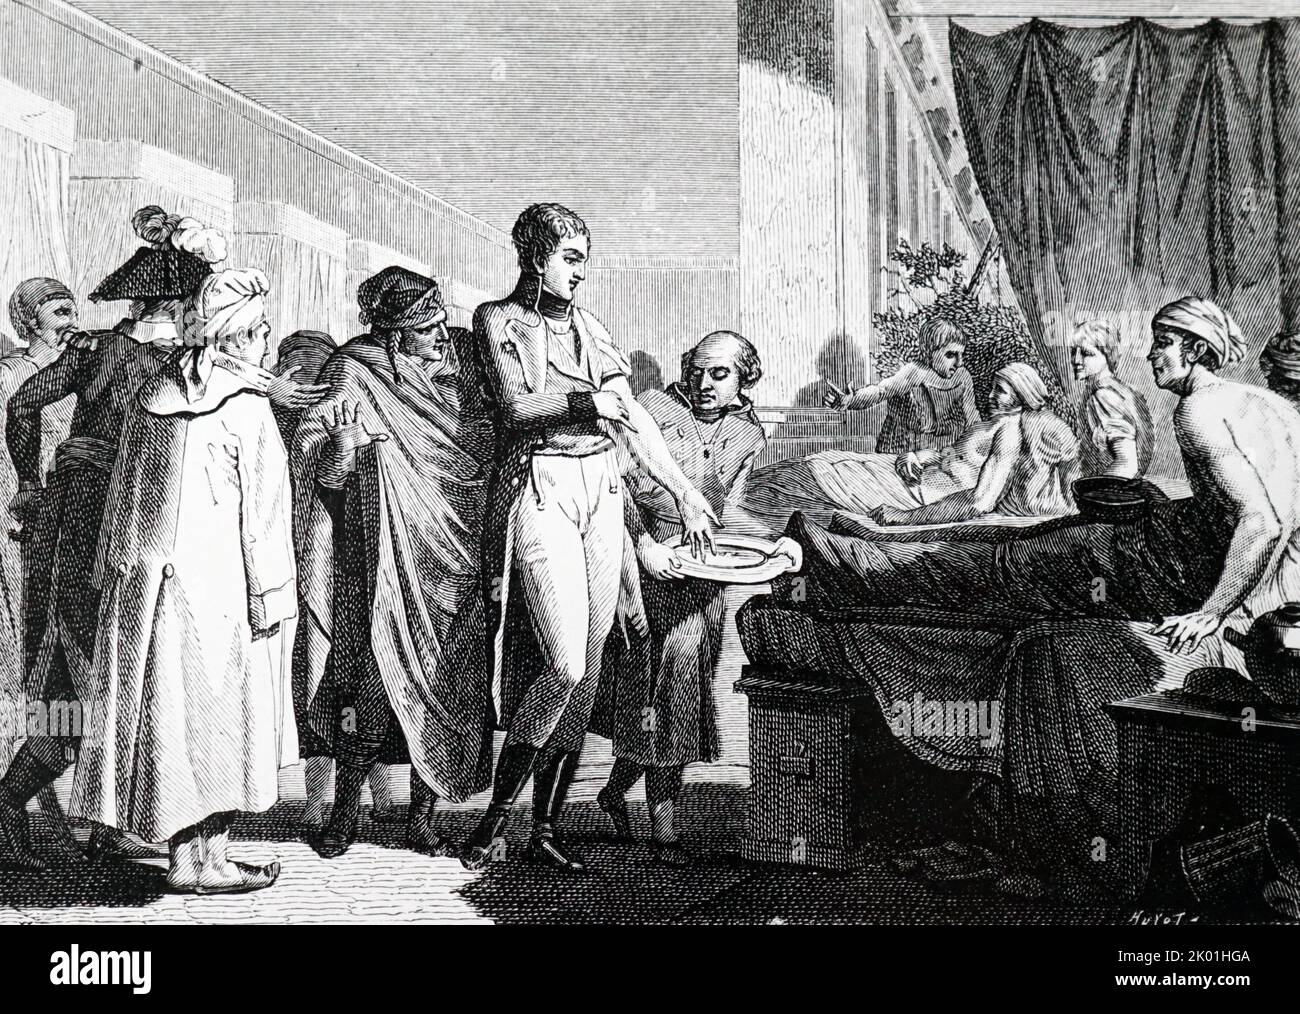 Nicolas Rene Dufriche, Baron Desgenettes (1762-1837) behandelt Kranke und Verwundete in Ägypten. Desgenettes war Chefarzt der französischen Armee in Italien um 1794 und 1798 in Ägypten, ebenfalls in Waterloo. Fiel von der Gunst bei der Restaurierung von Louis XVIII. Chefarzt von Les Invalides im Jahr 1832. Stockfoto